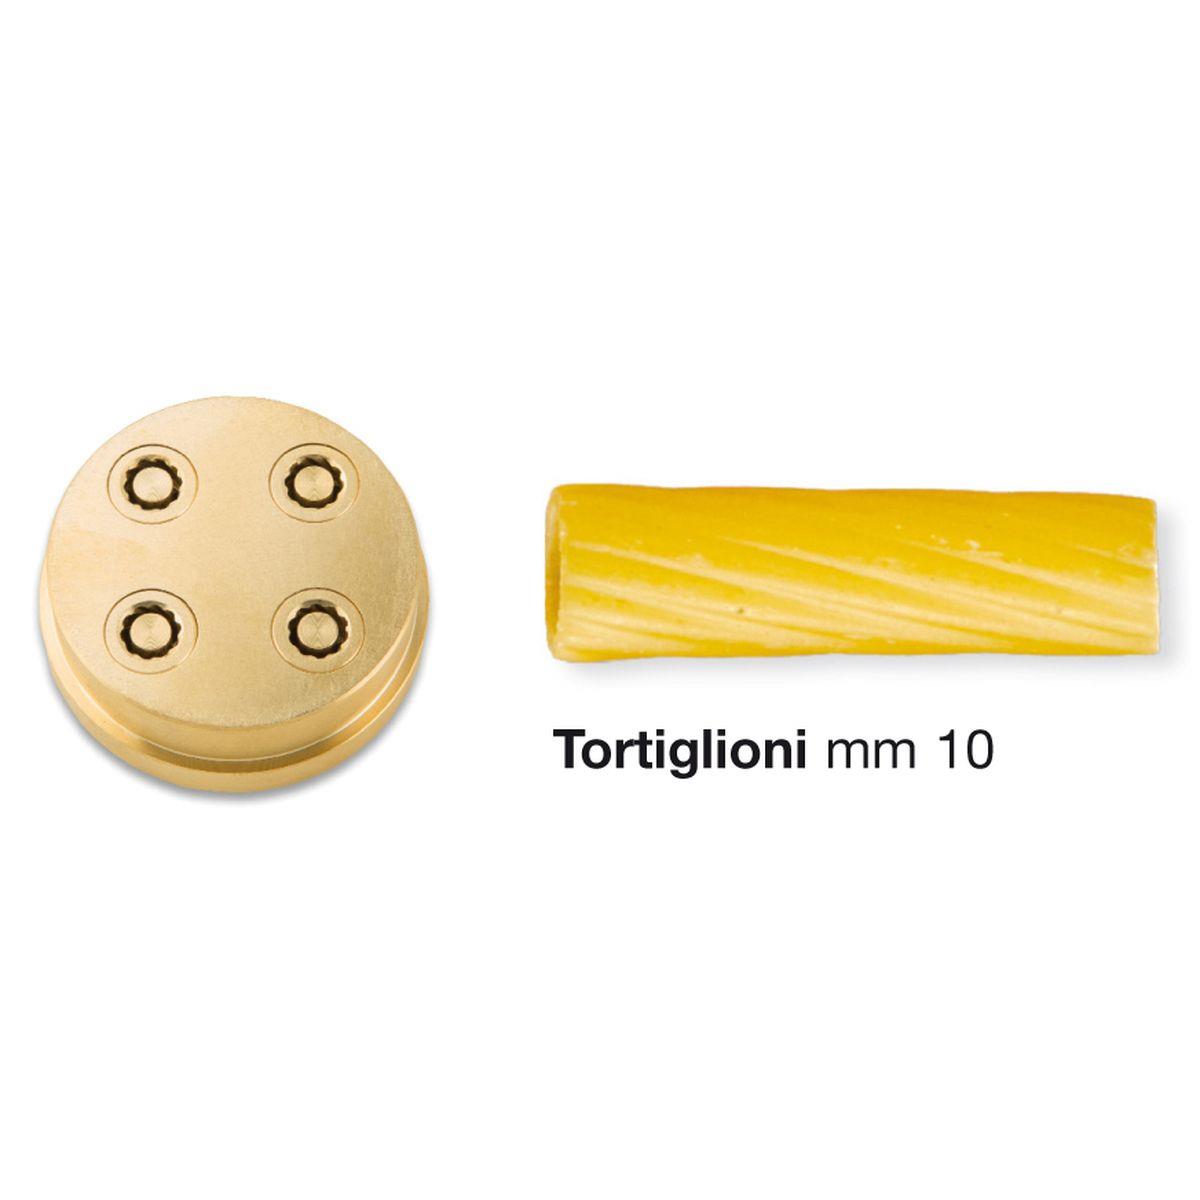 bronze die 285 for tortiglioni for home chef pasta machine